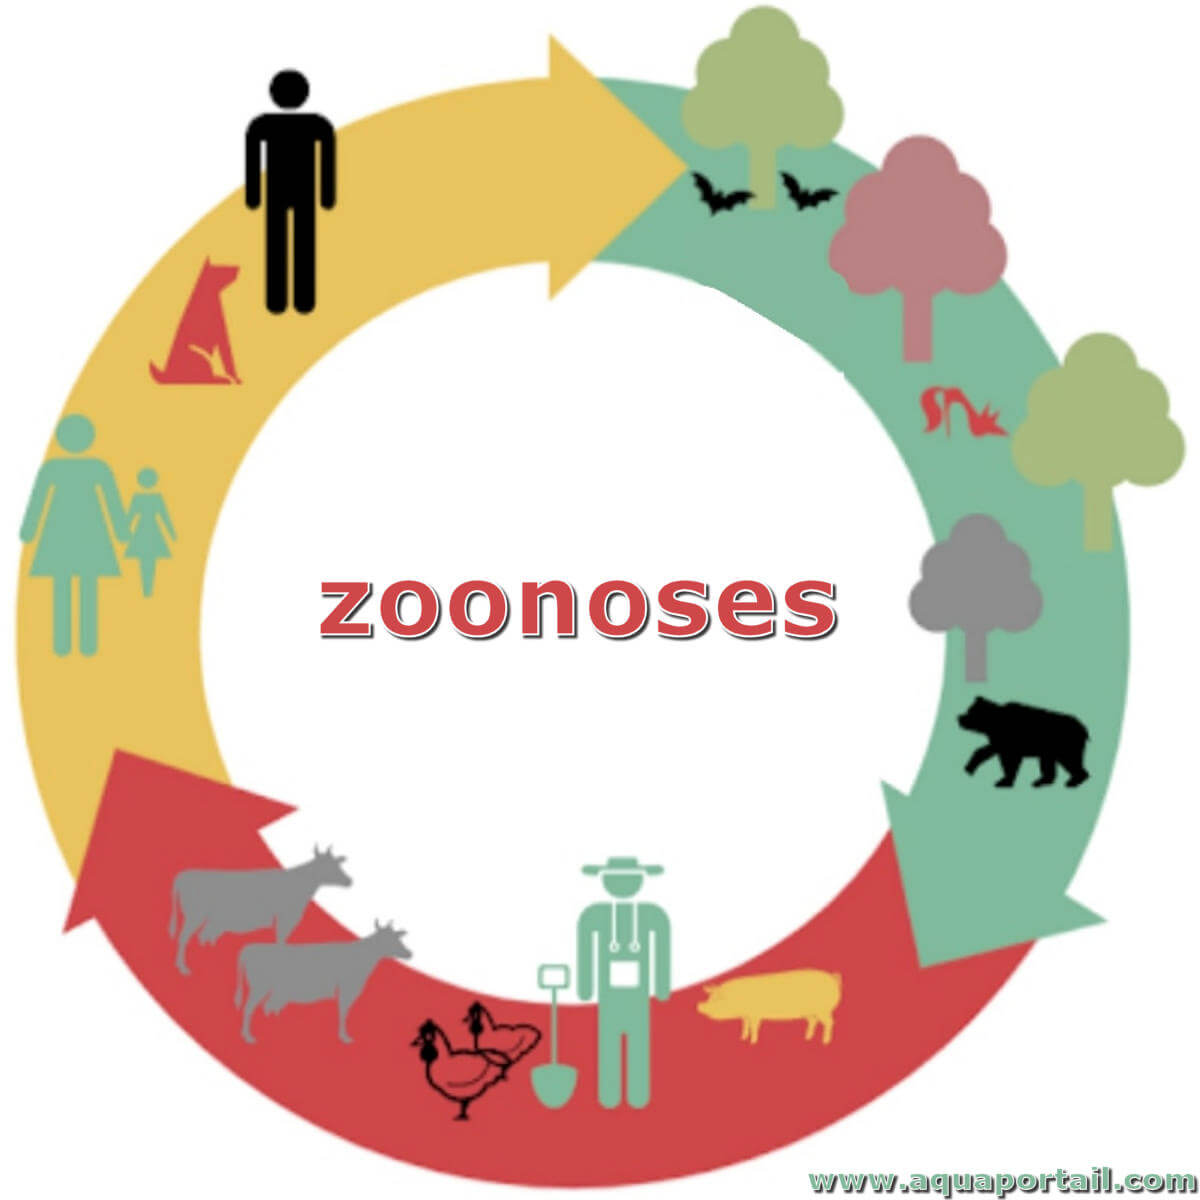 Showcase Image for Exploration des zoonoses priorisées par l’Observatoire multipartite québécois sur les zoonoses et l’adaptation aux changements climatiques dans la population québécoise